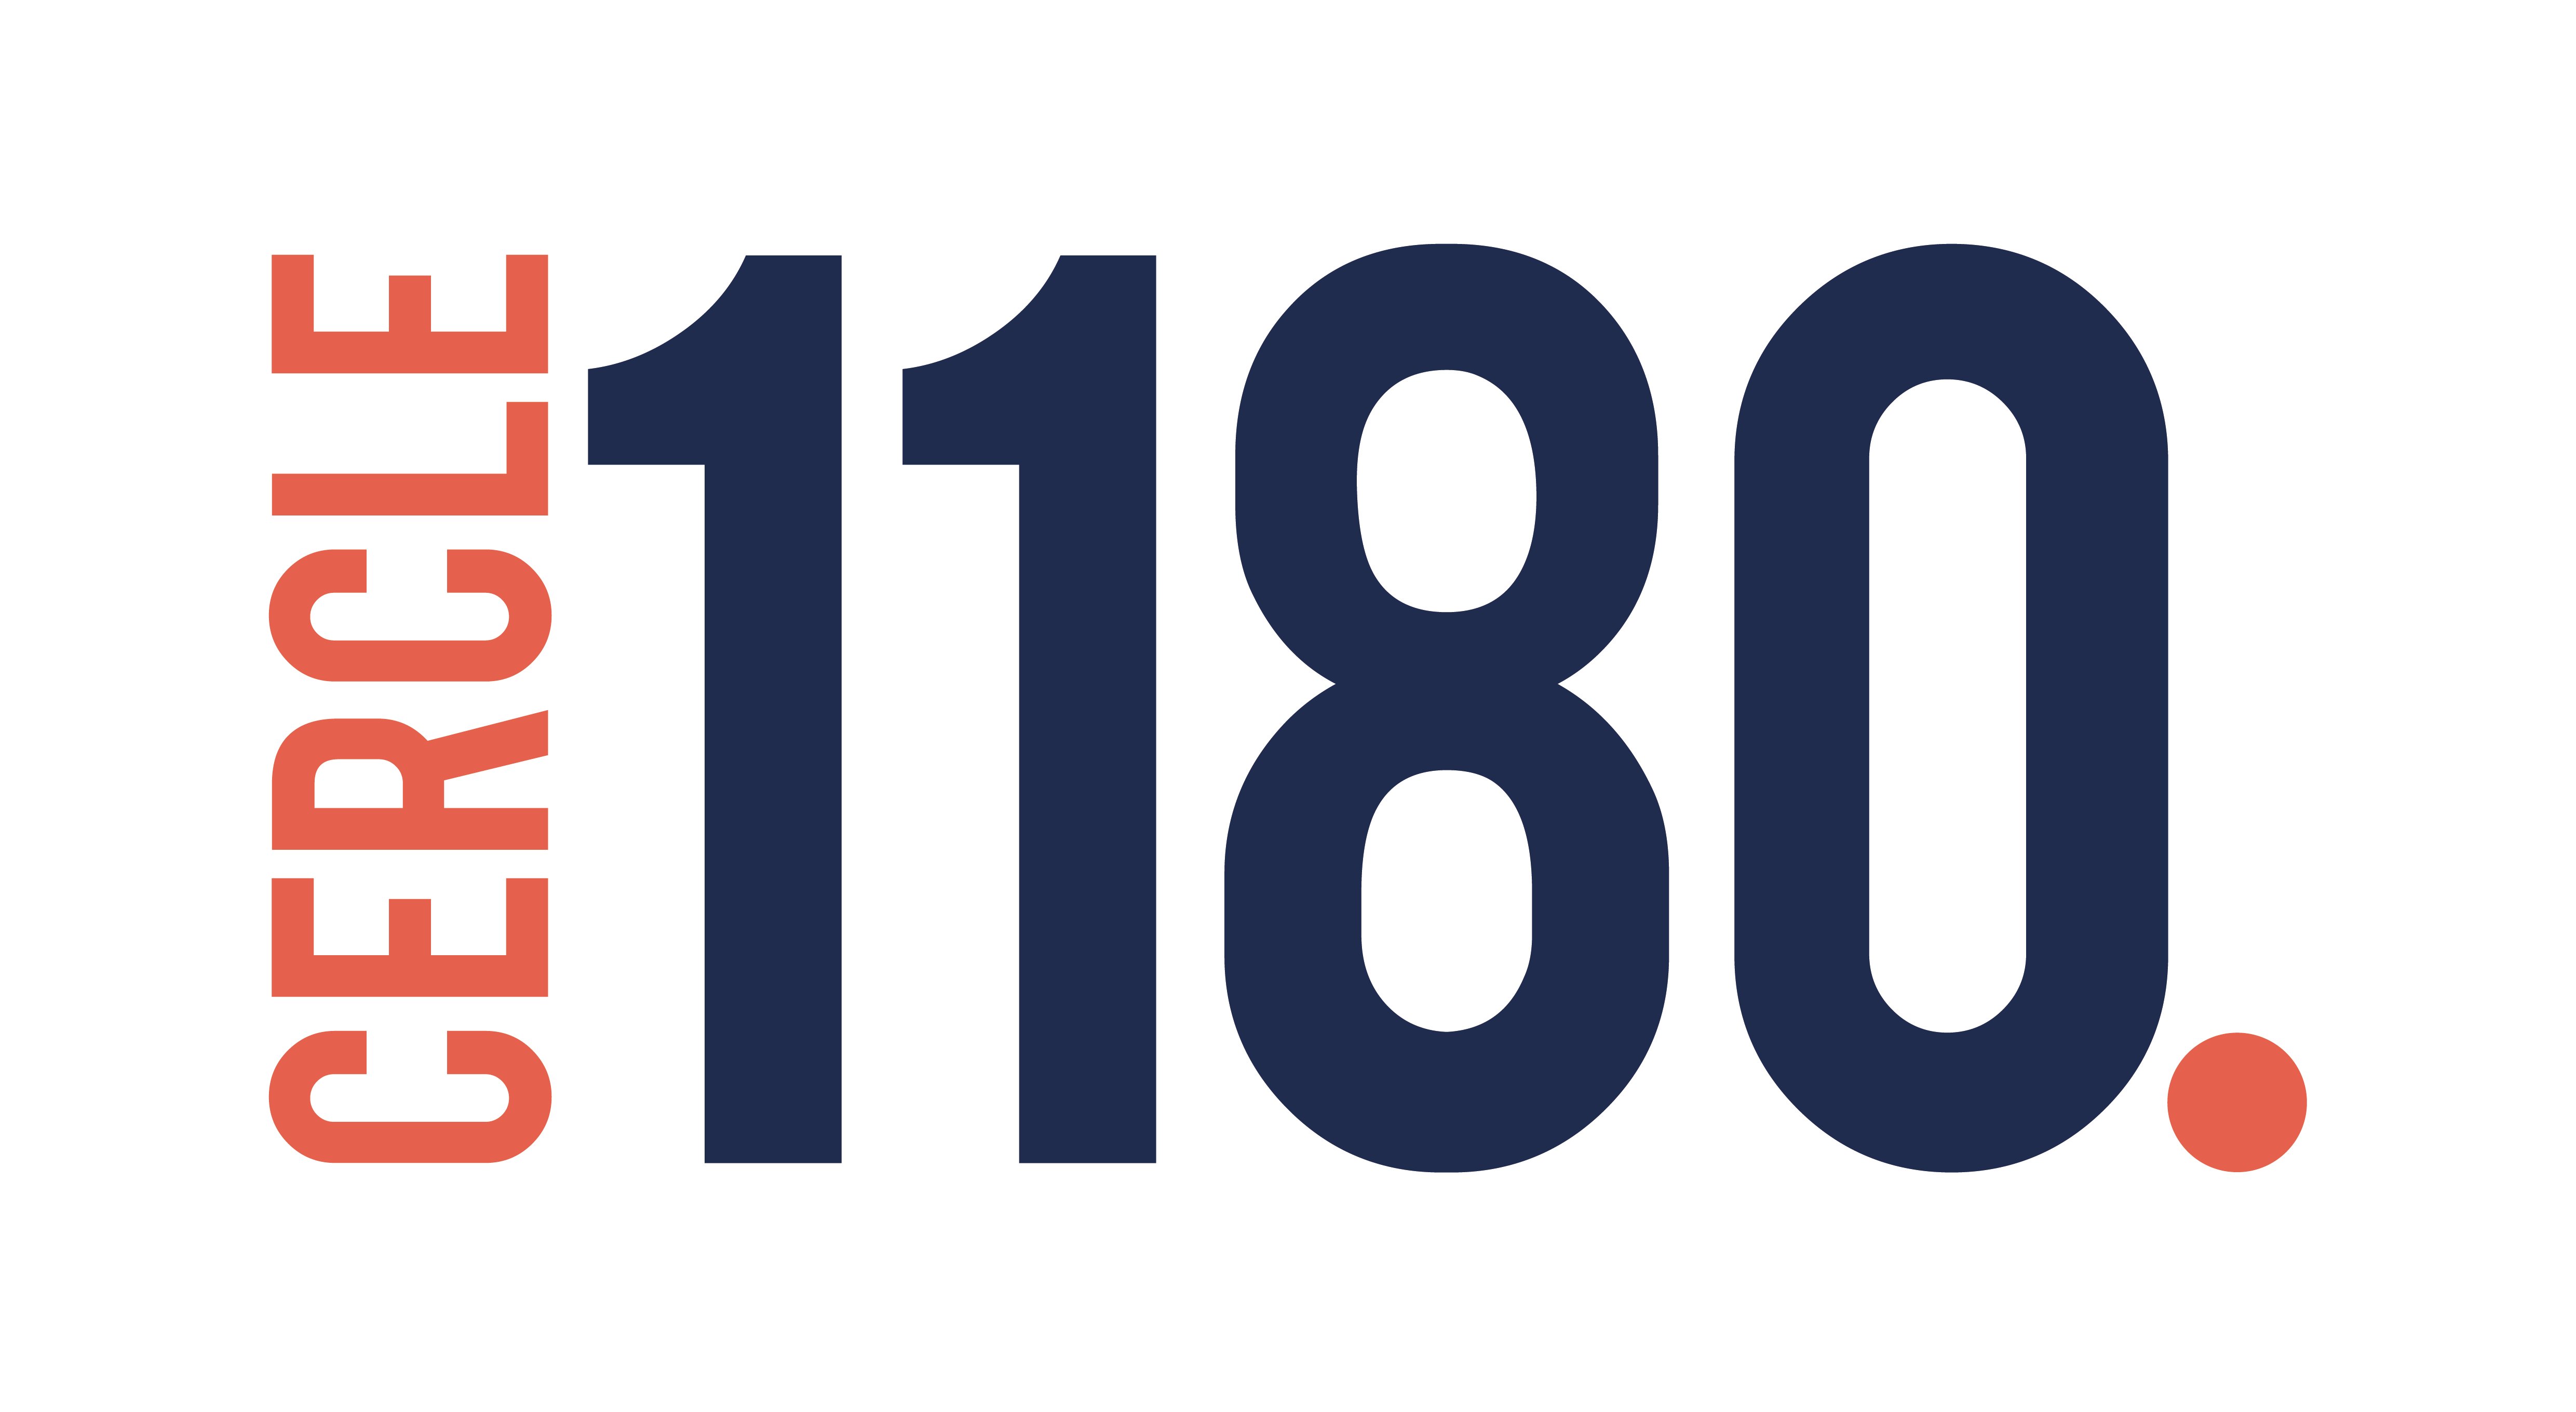 Cercle 1180